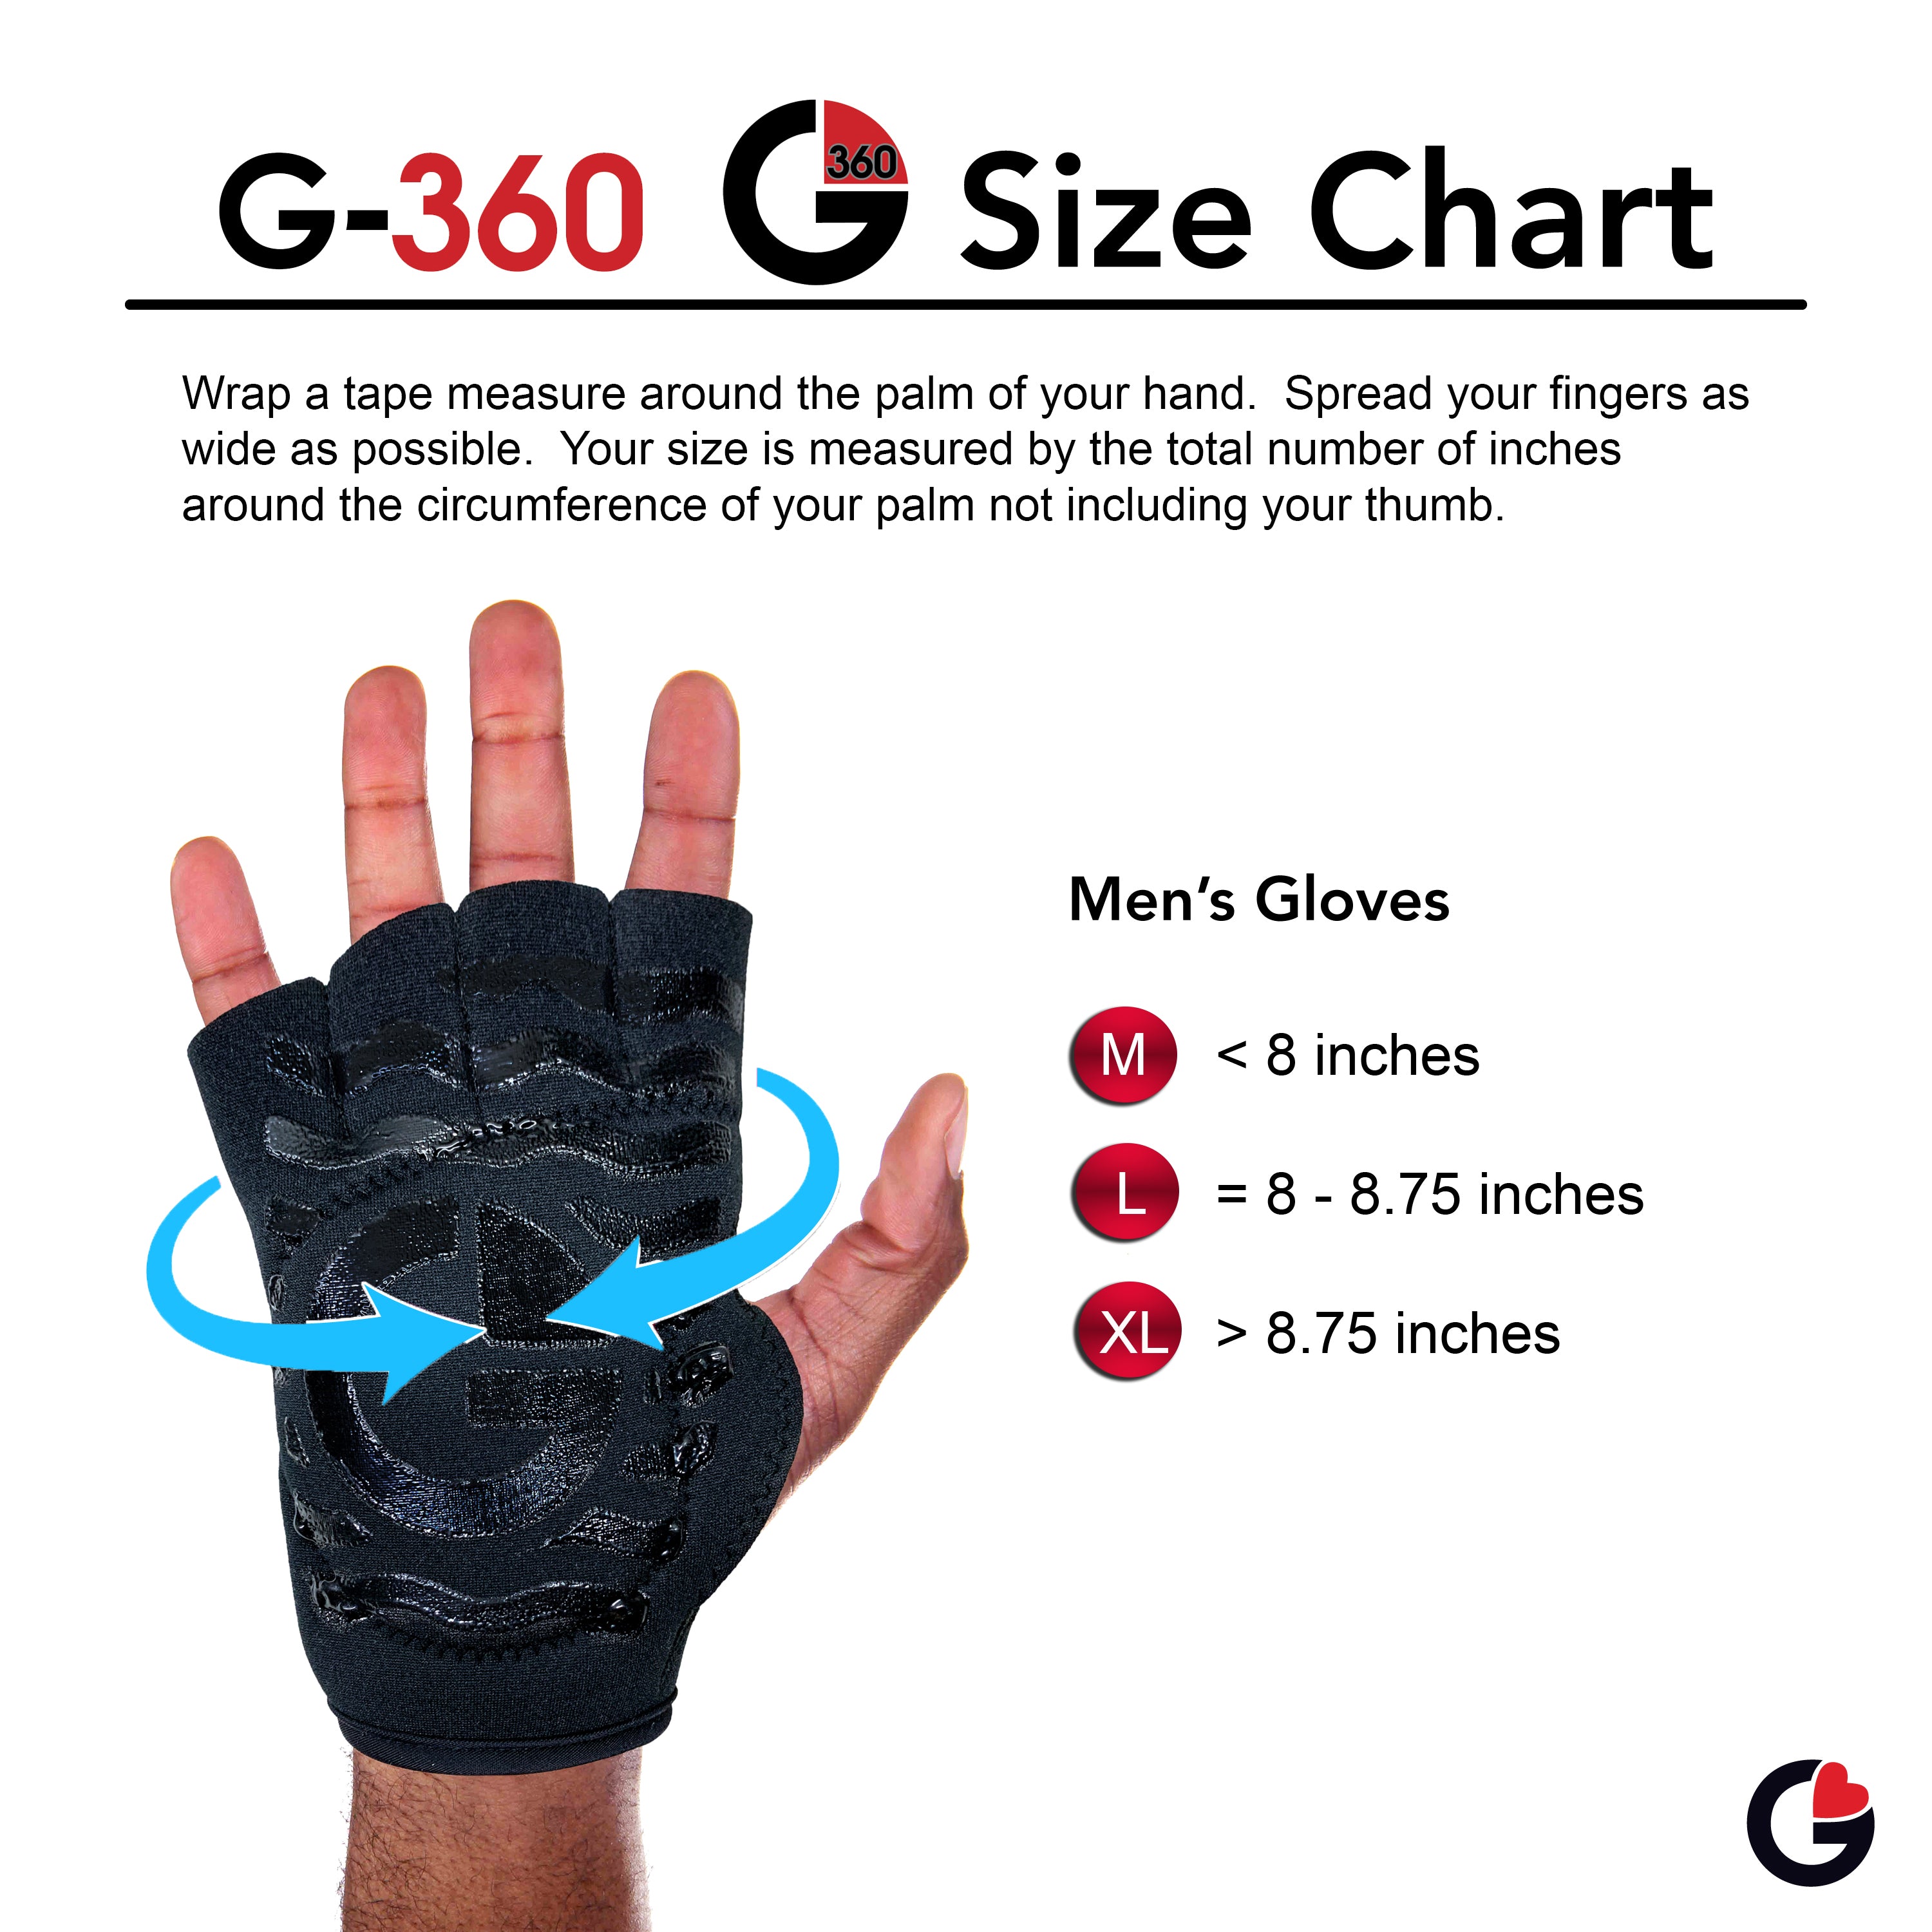 Men's Black Gelometrics Gloves